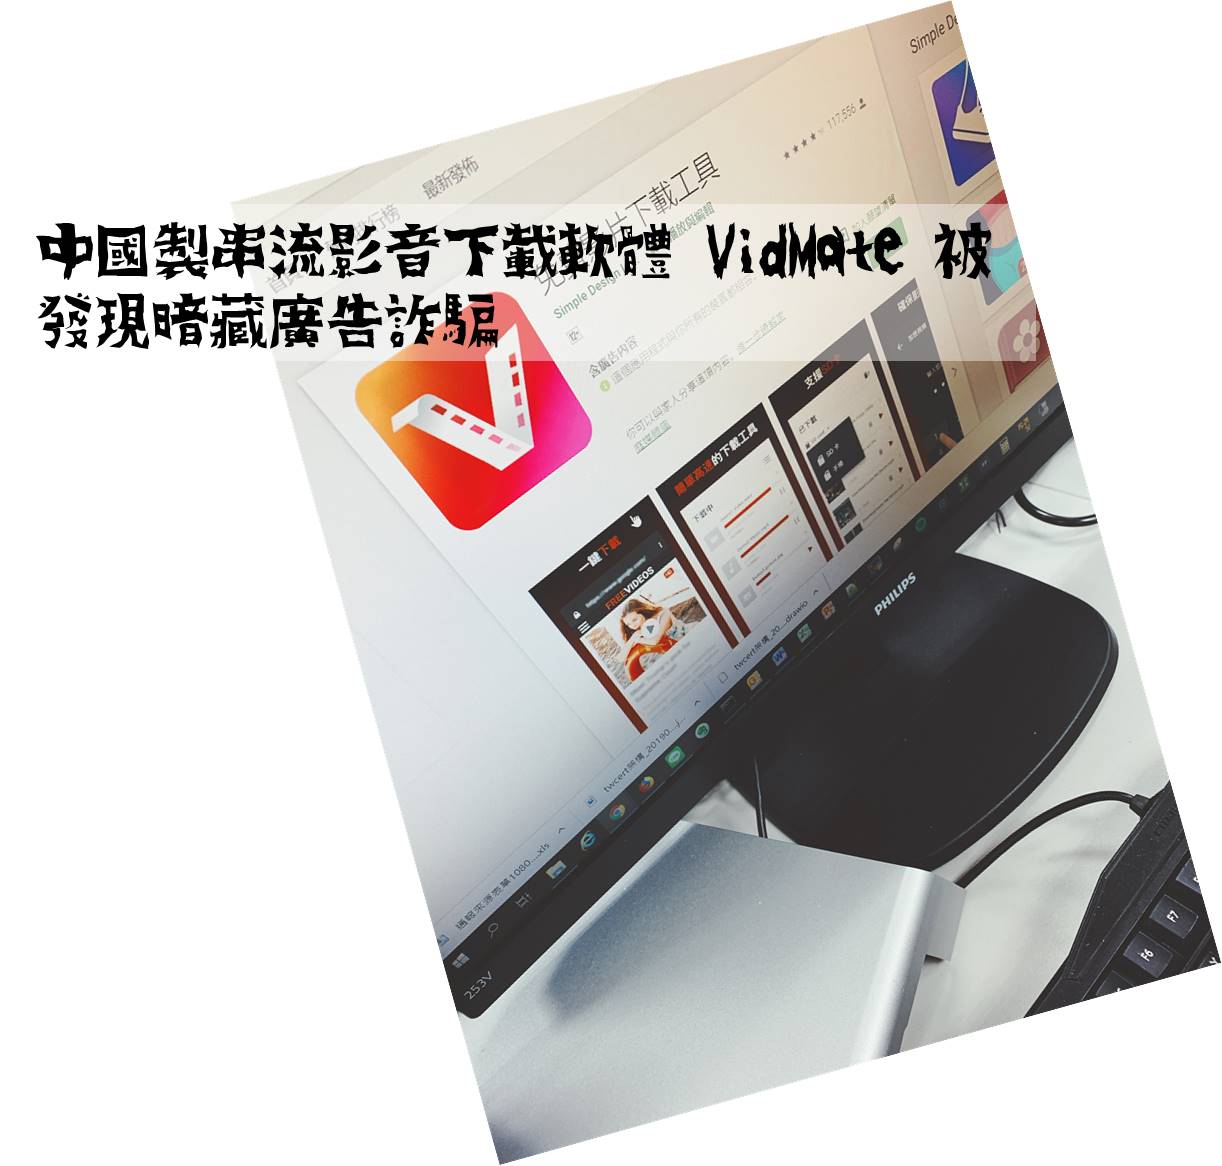 中國製串流影音下載軟體 VidMate 被發現暗藏廣告詐騙